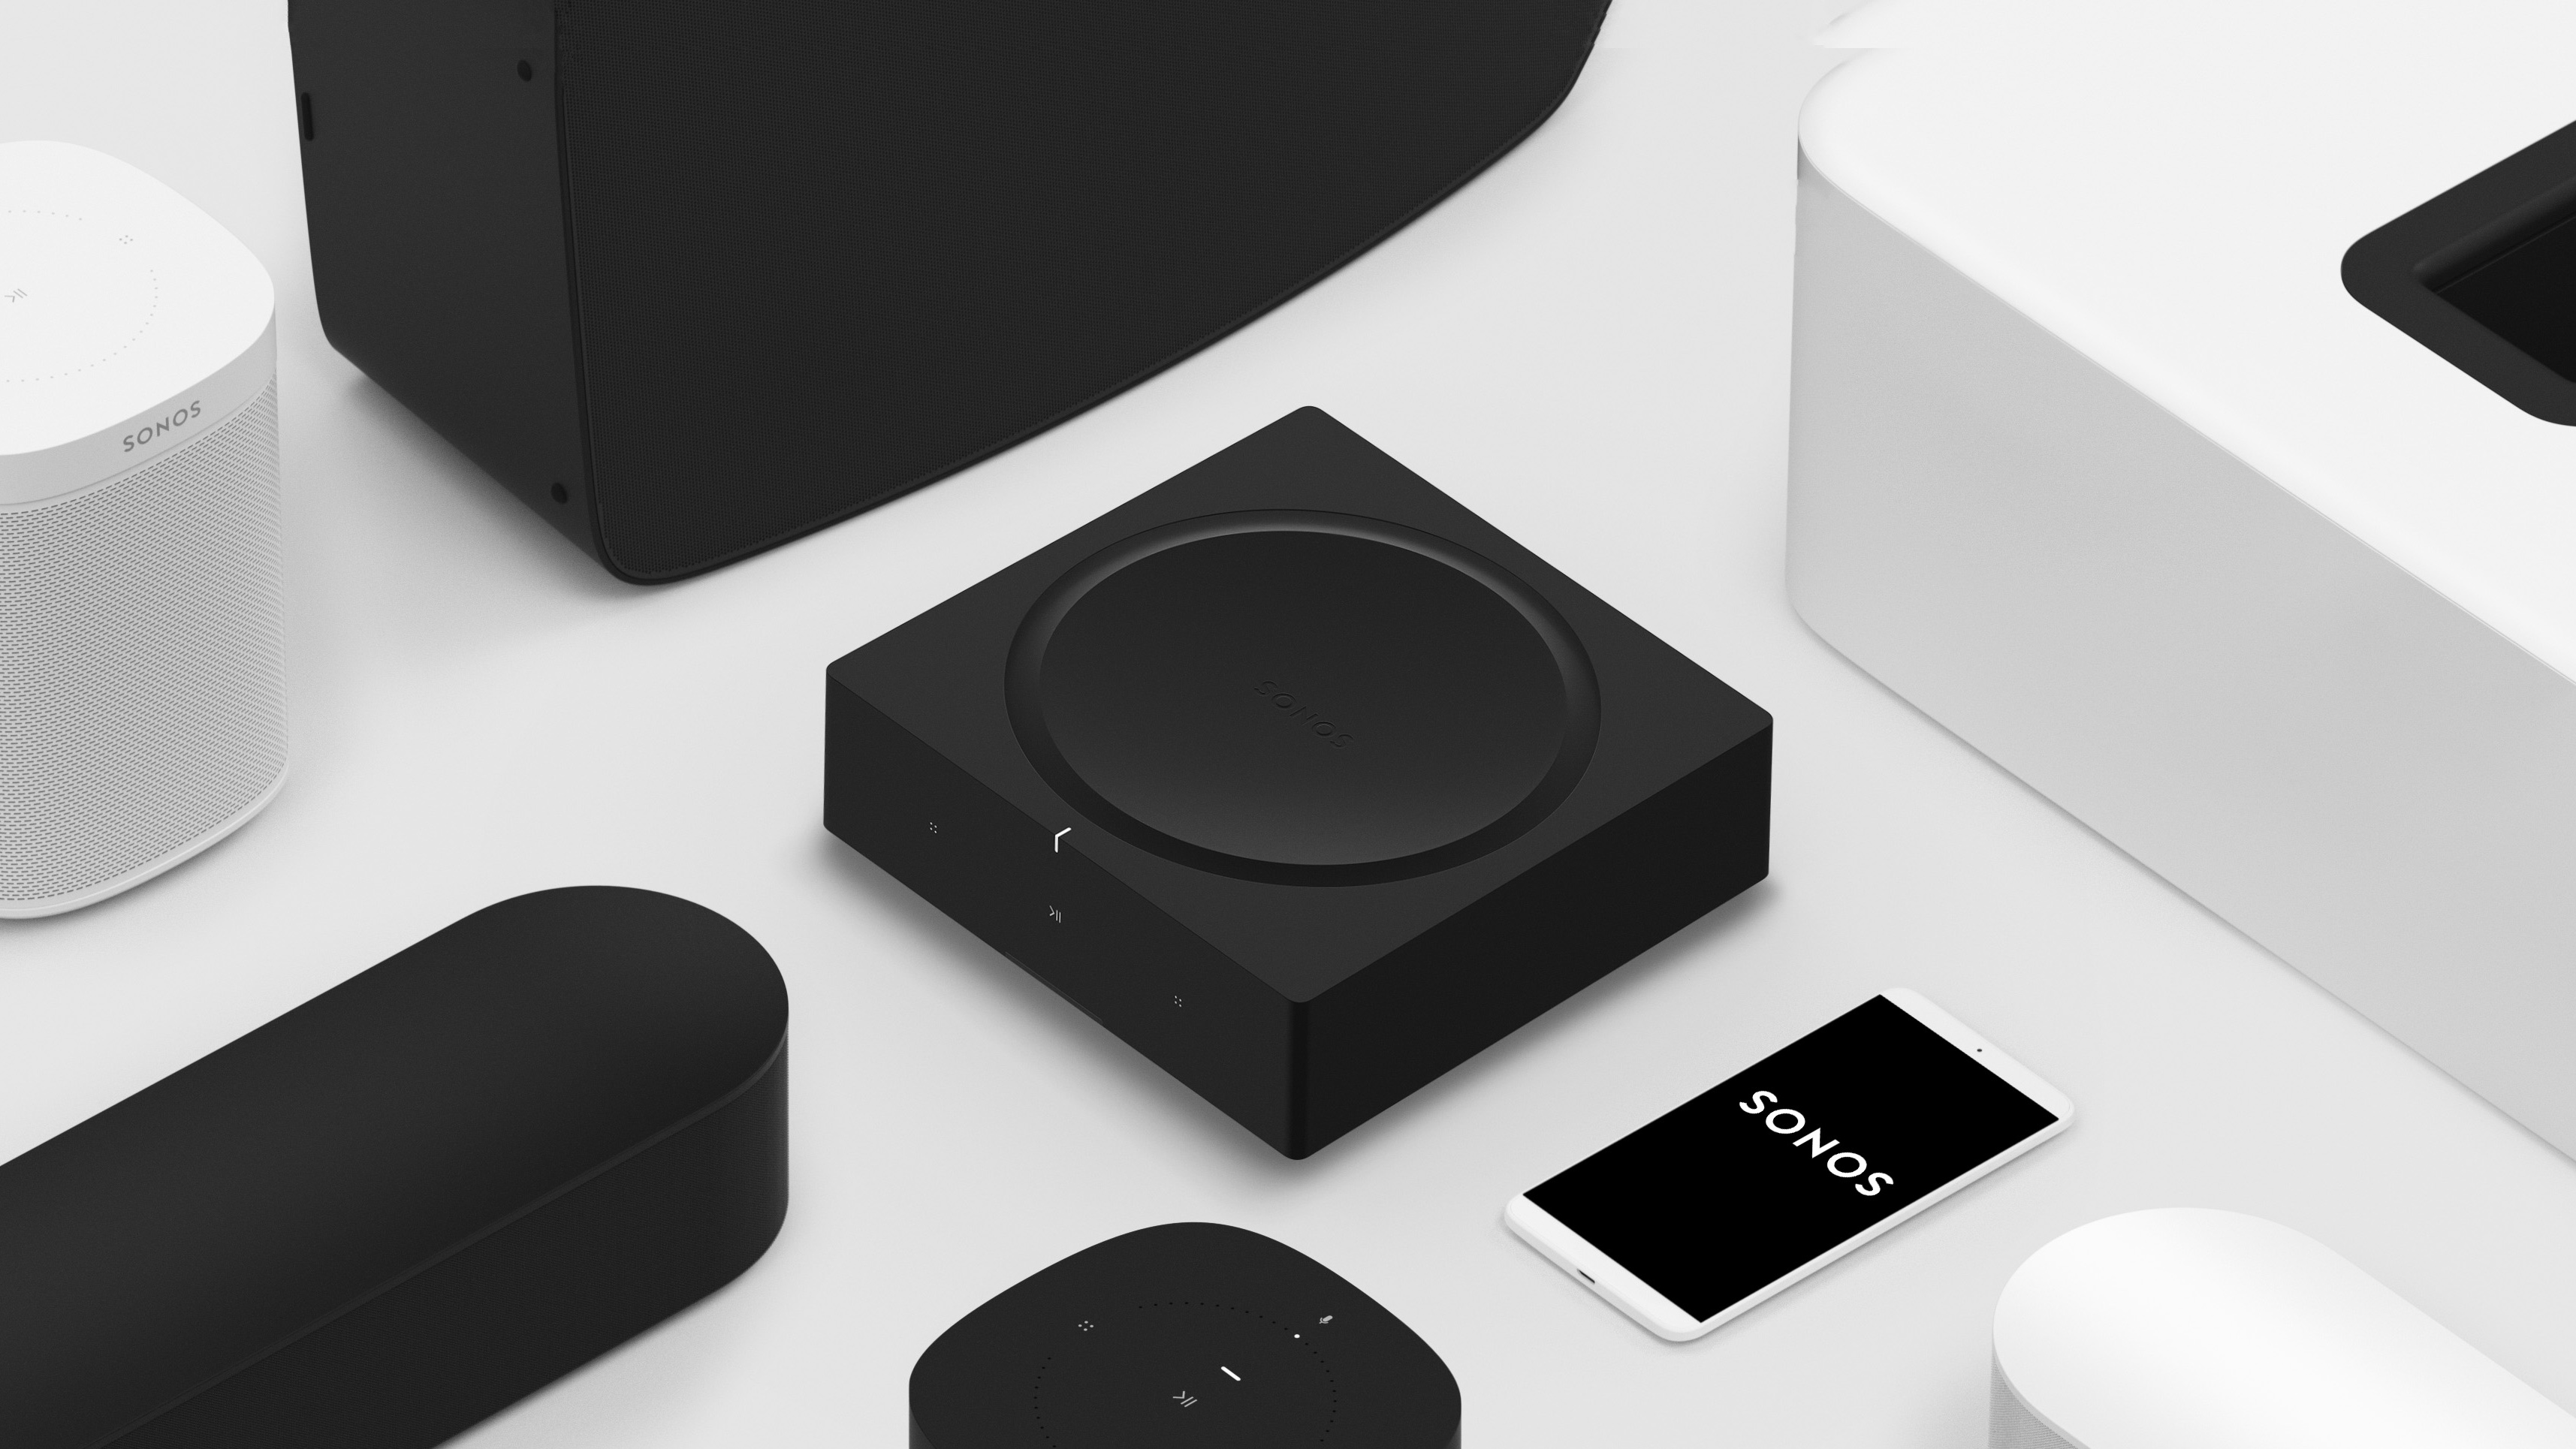 متجر التطبيقات 18 مارس 2020 Sonos S2: تقدم الشركة المصنعة لمكبرات الصوت نظام تشغيل جديدًا وتطبيقًا جديدًا